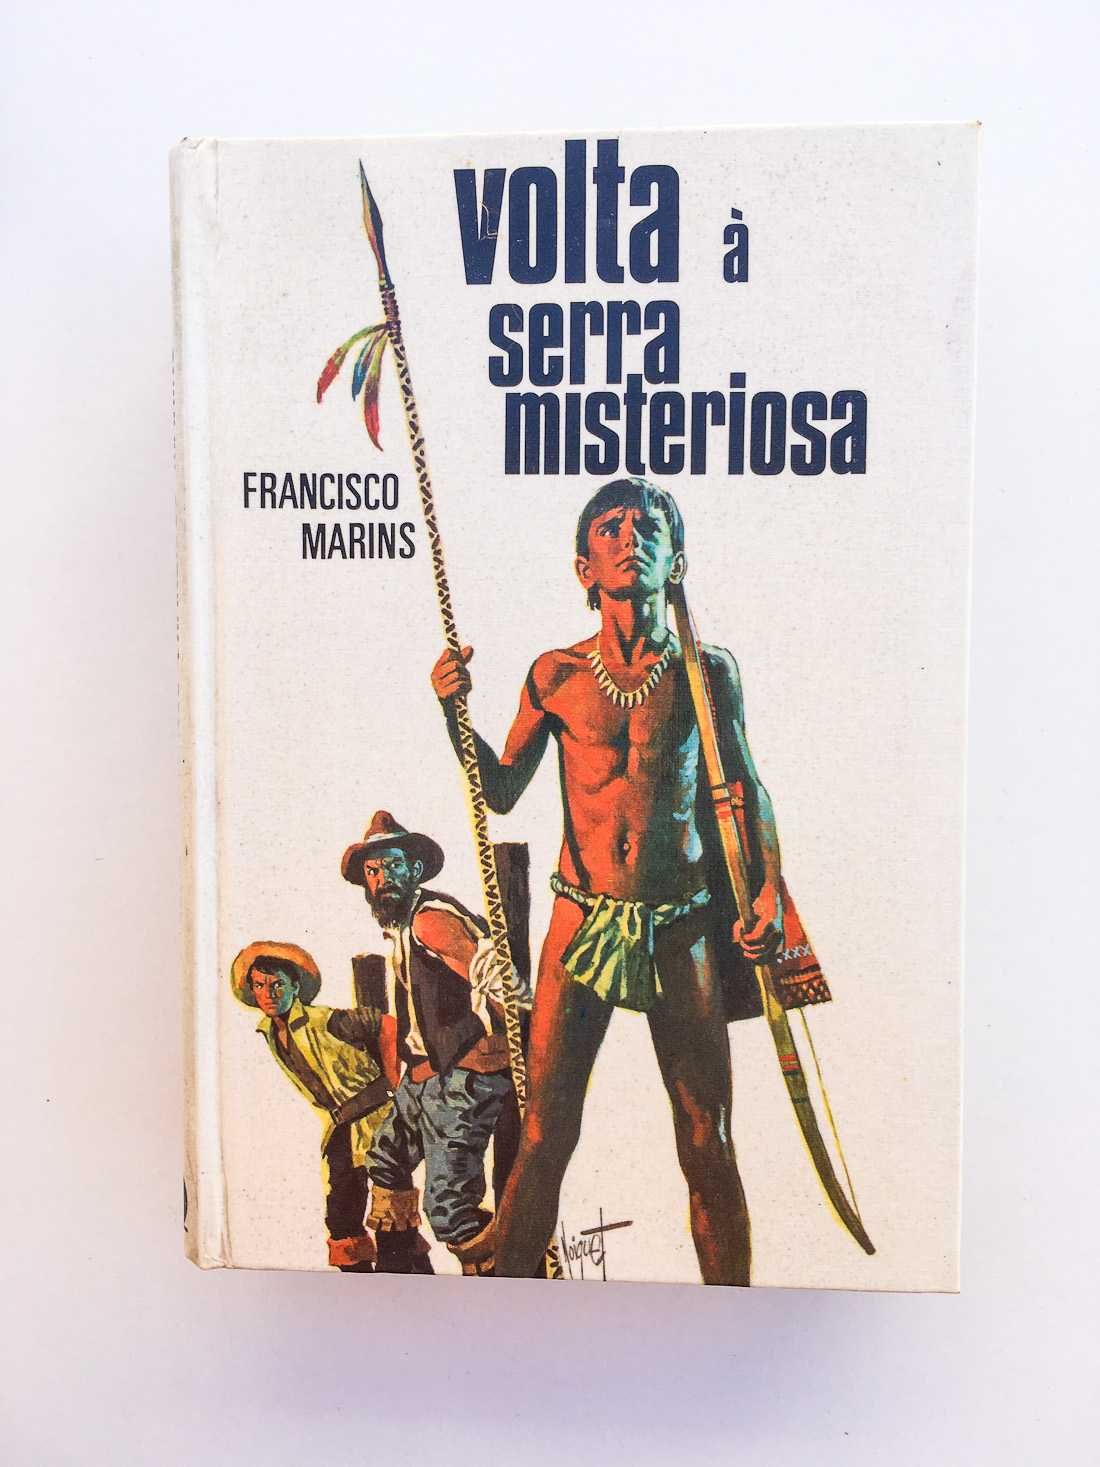 Vários Livros de Francisco Marins - 3 Volumes